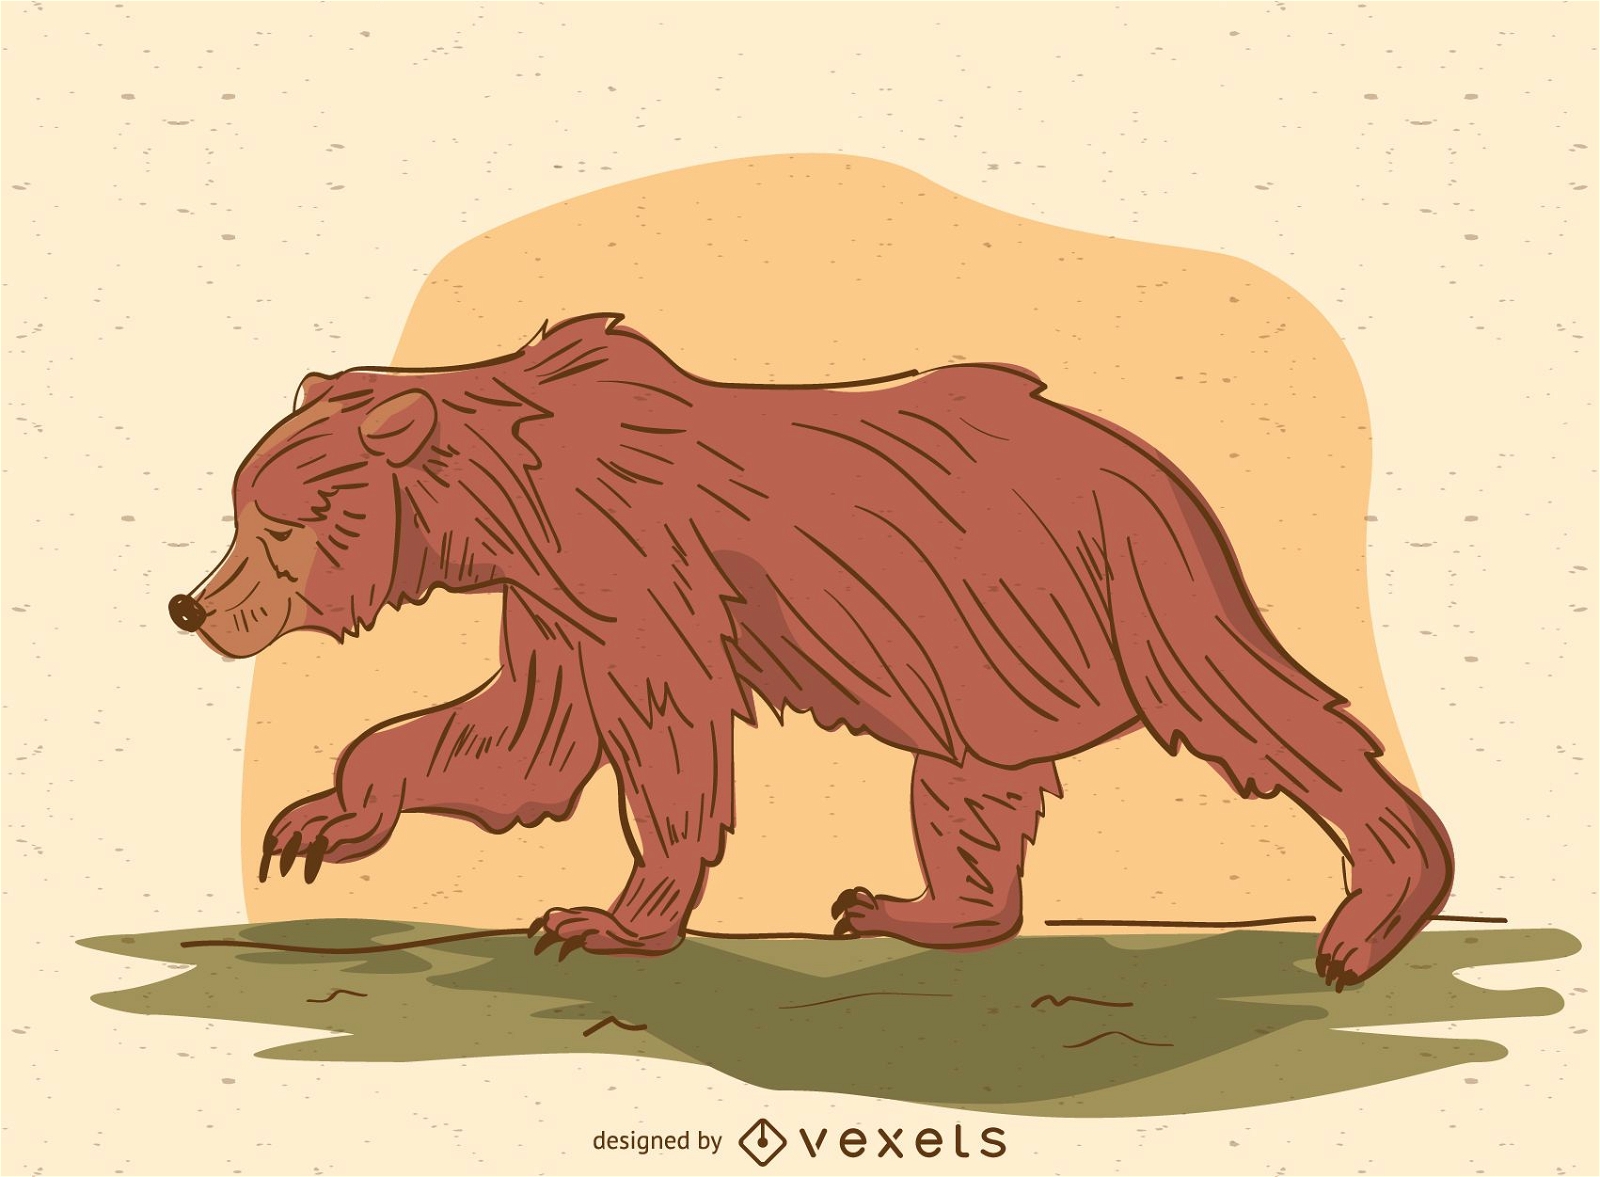 Tragende Karikaturillustration des Bären